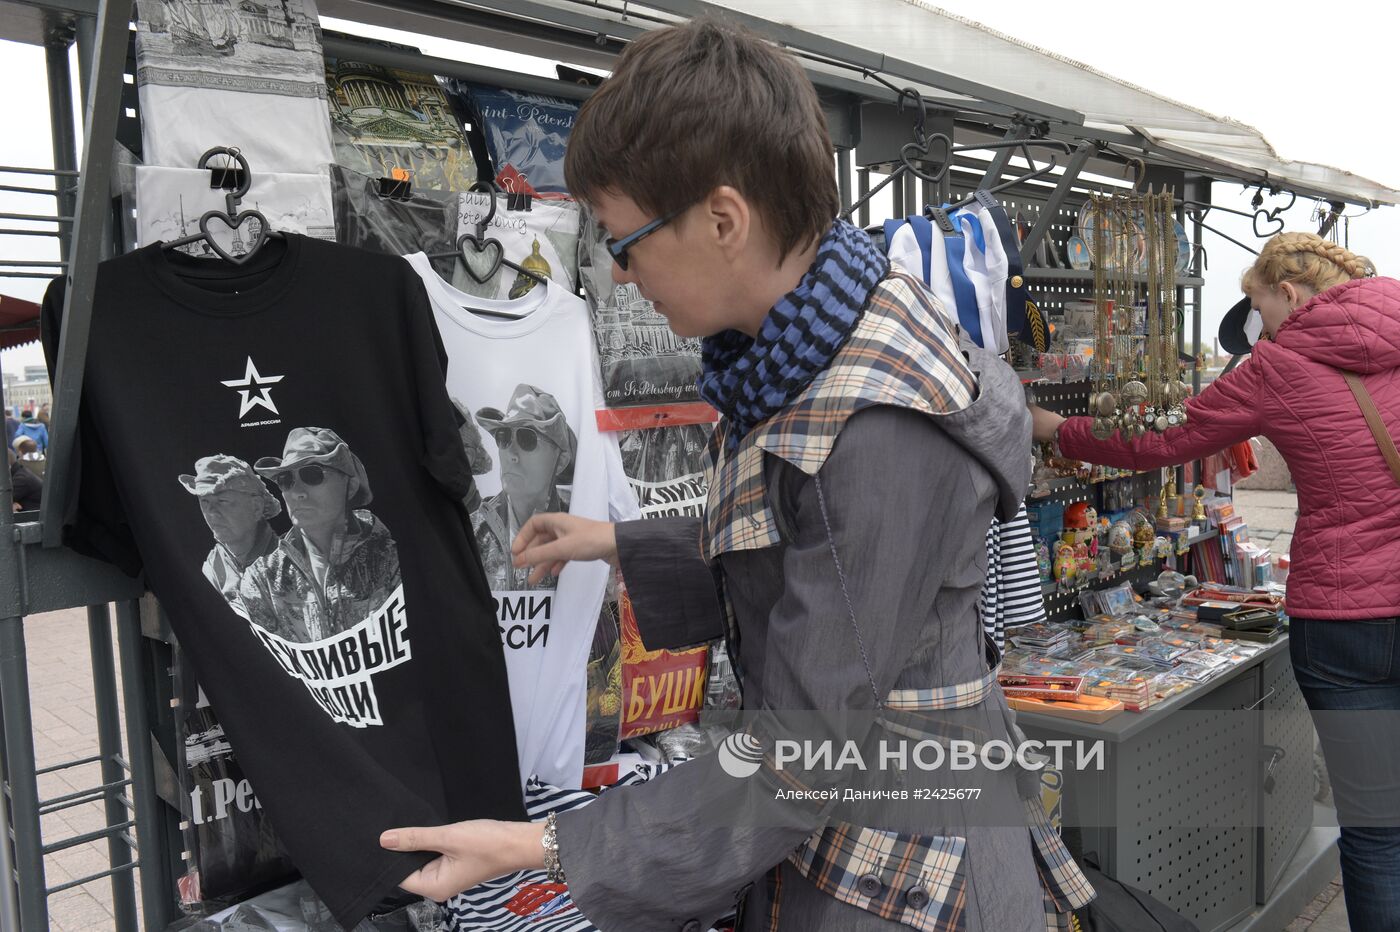 Минобороны РФ начало продажу фирменной продукции "Армия России" и "Вежливые люди"